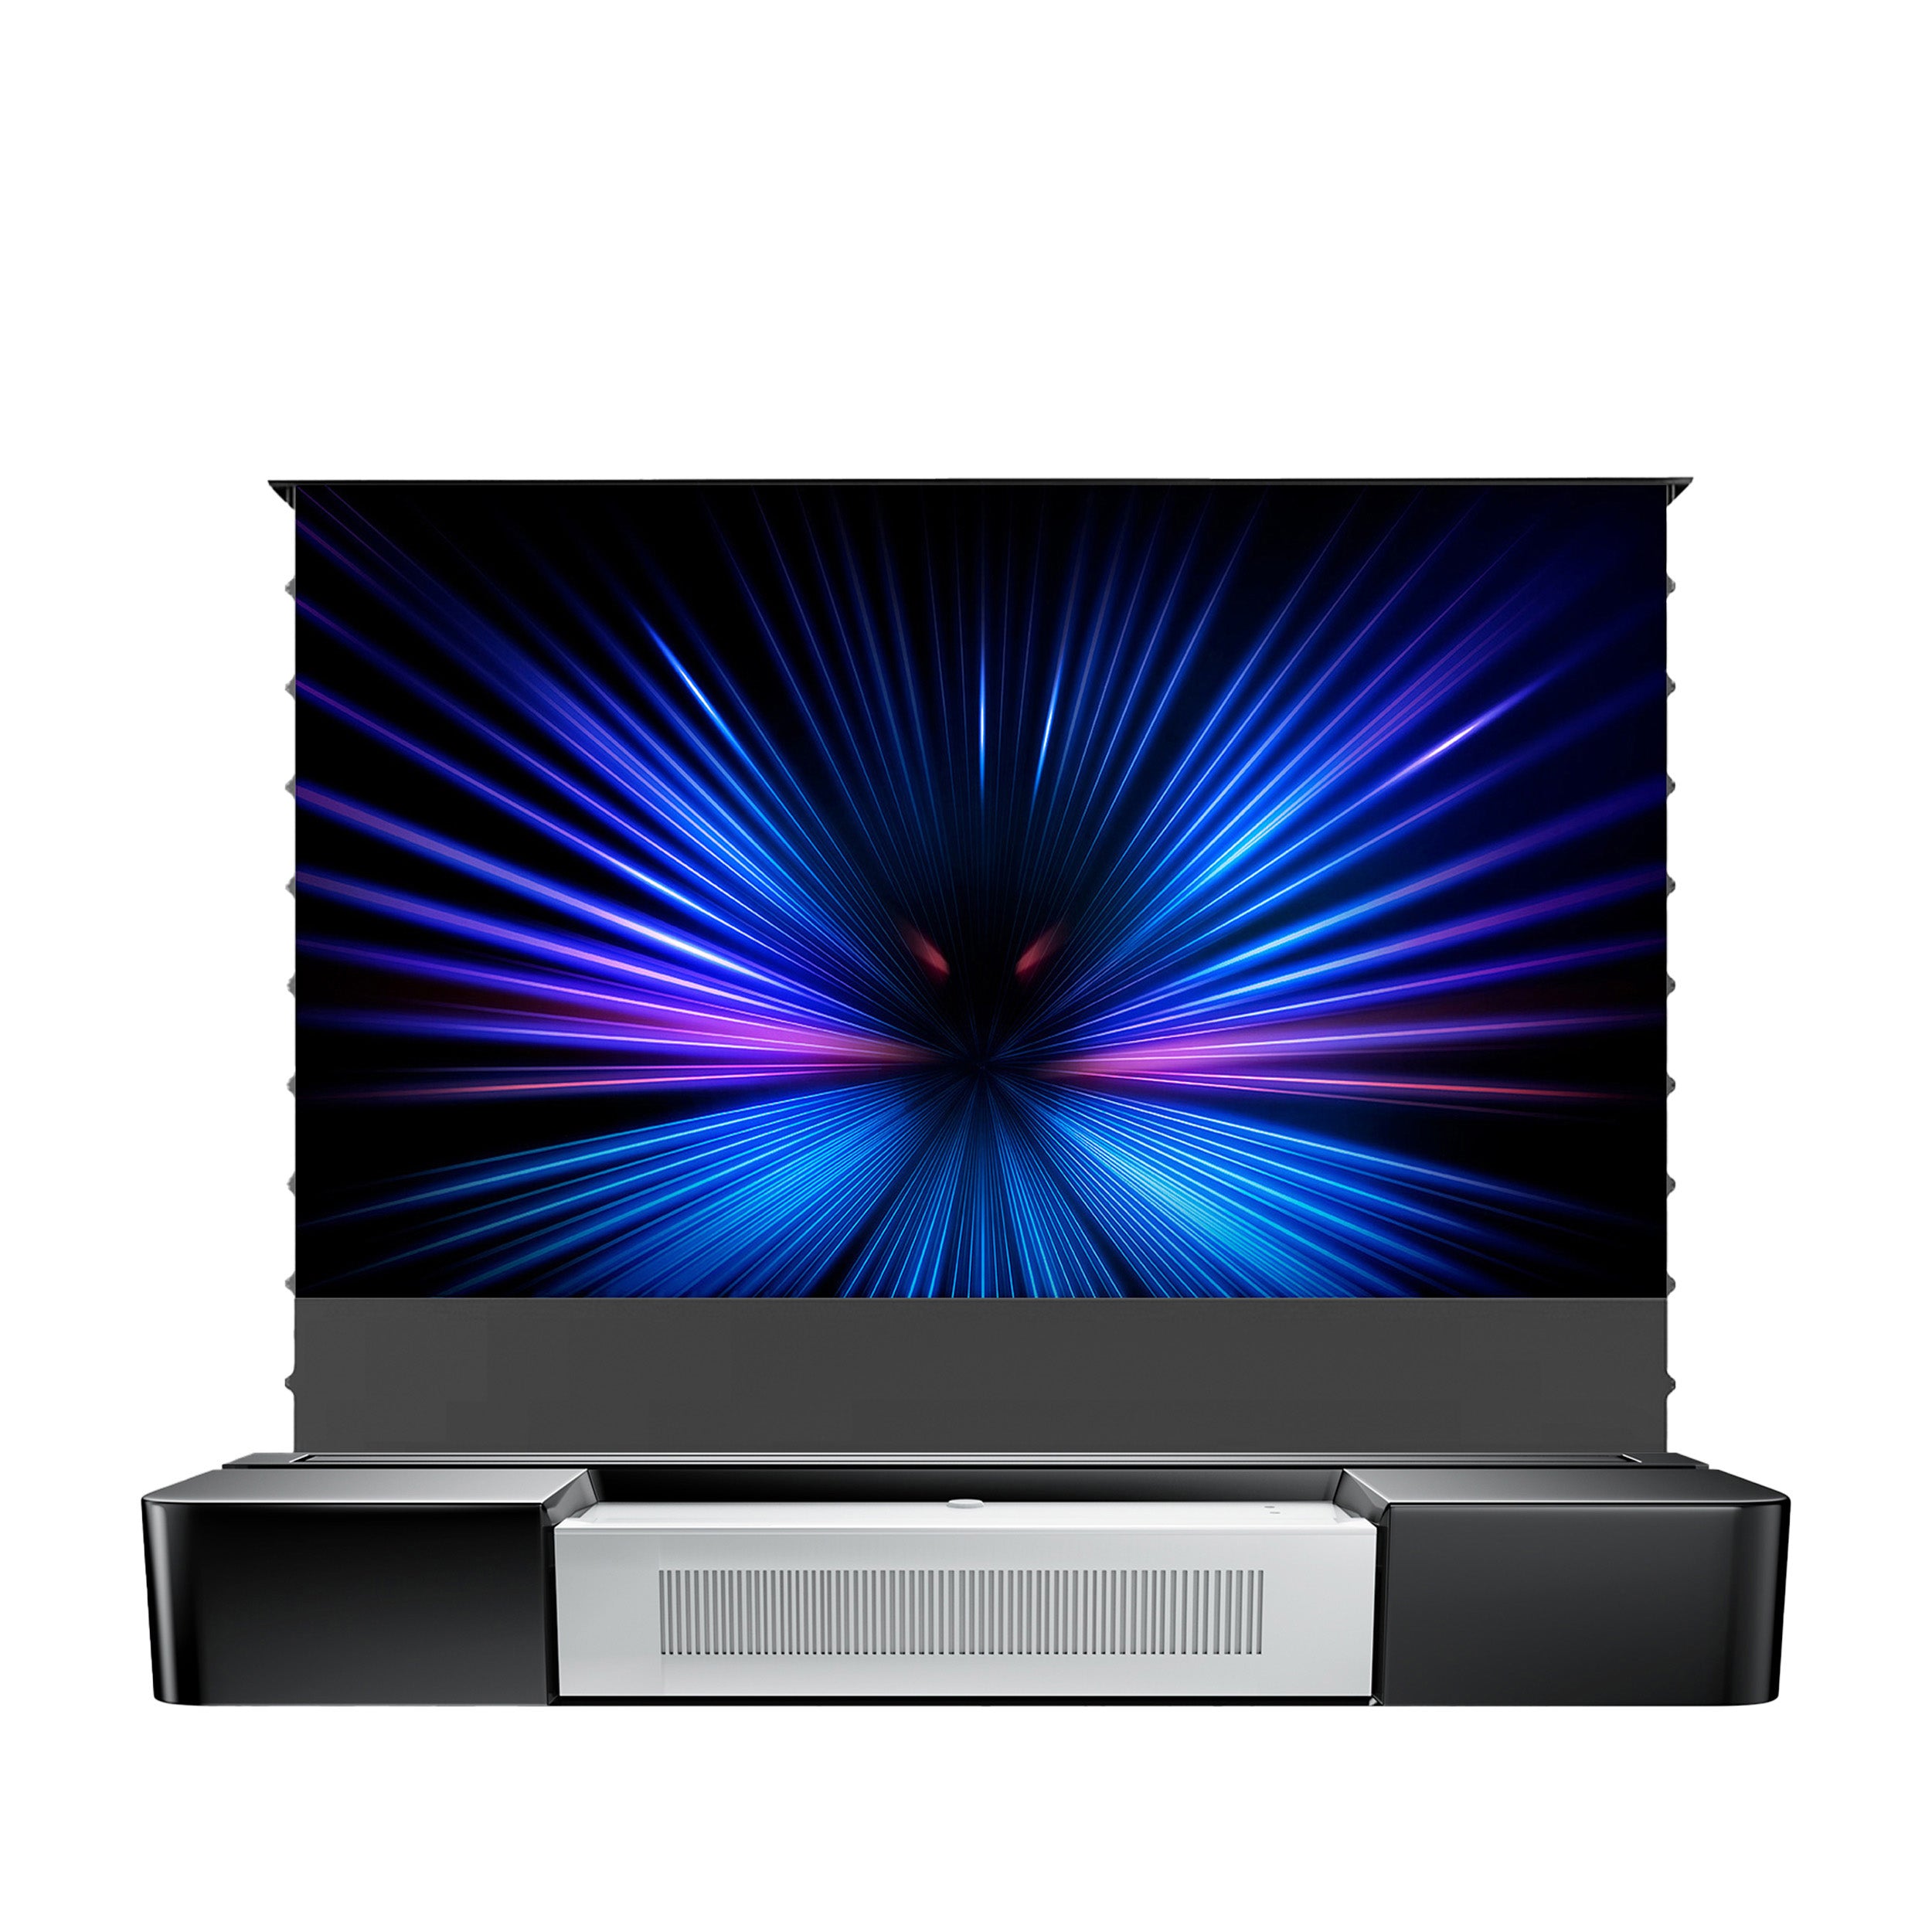 WUPRO cinéma haut de gamme avec écran CBSP ALR intégré meuble TV Laser pour projecteur Laser UST